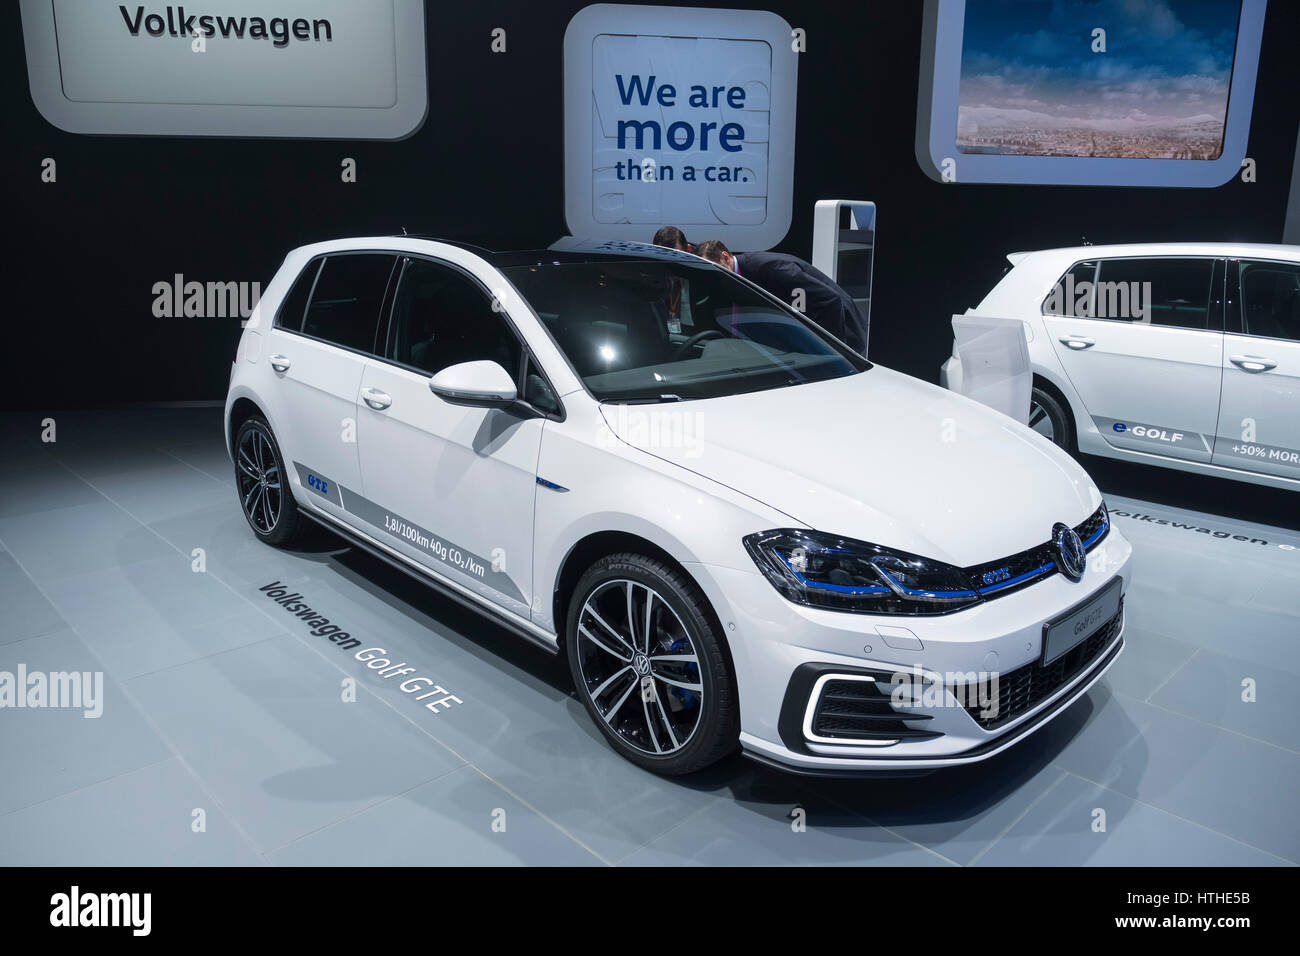 Volkswagen Golf GTE voiture hybride plug-in au 87e Salon International de l'Automobile à Genève Suisse 2017 Banque D'Images